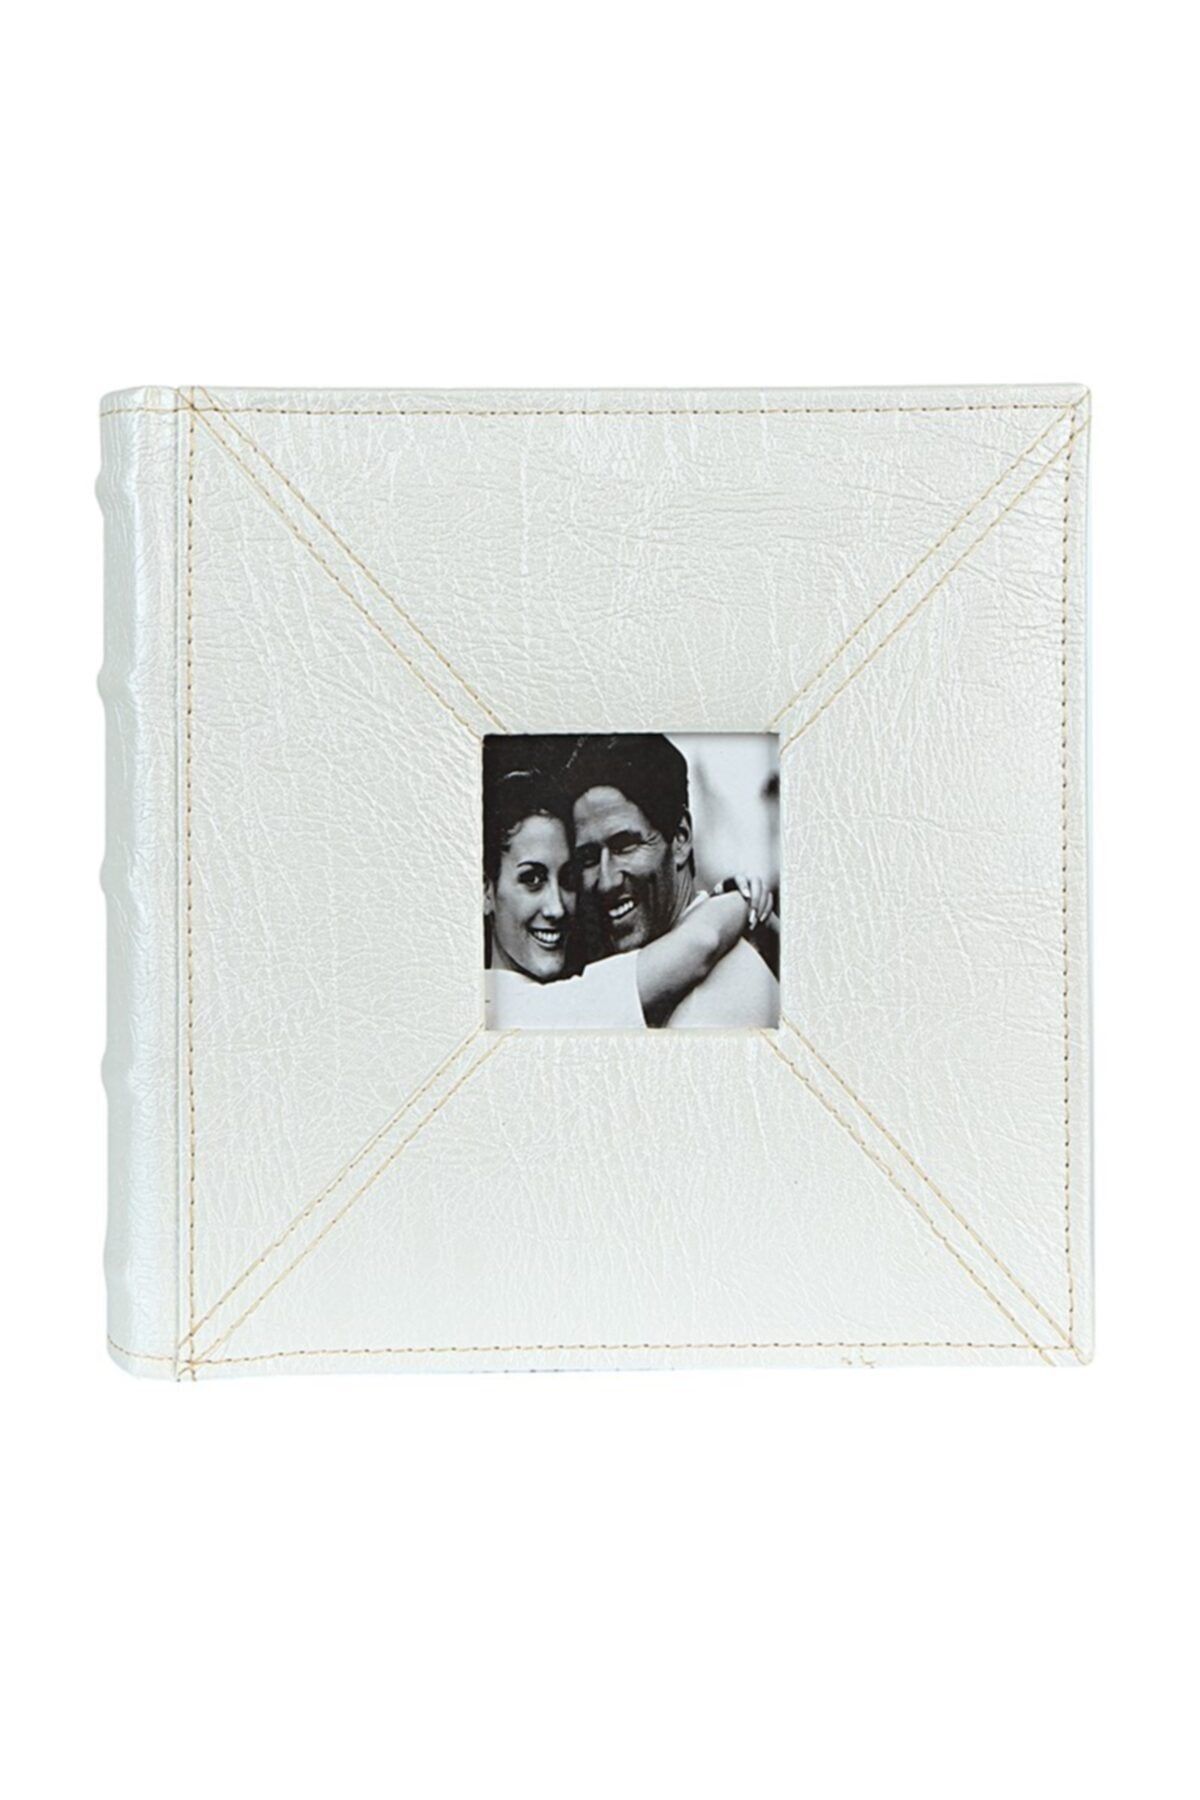 Vural Foto Baskı Lüks Deri Albüm 10x15cm 200lük - Beyaz, Sağlam Kalın Kapaklı Fotoğraf Albümü Düğün Aile